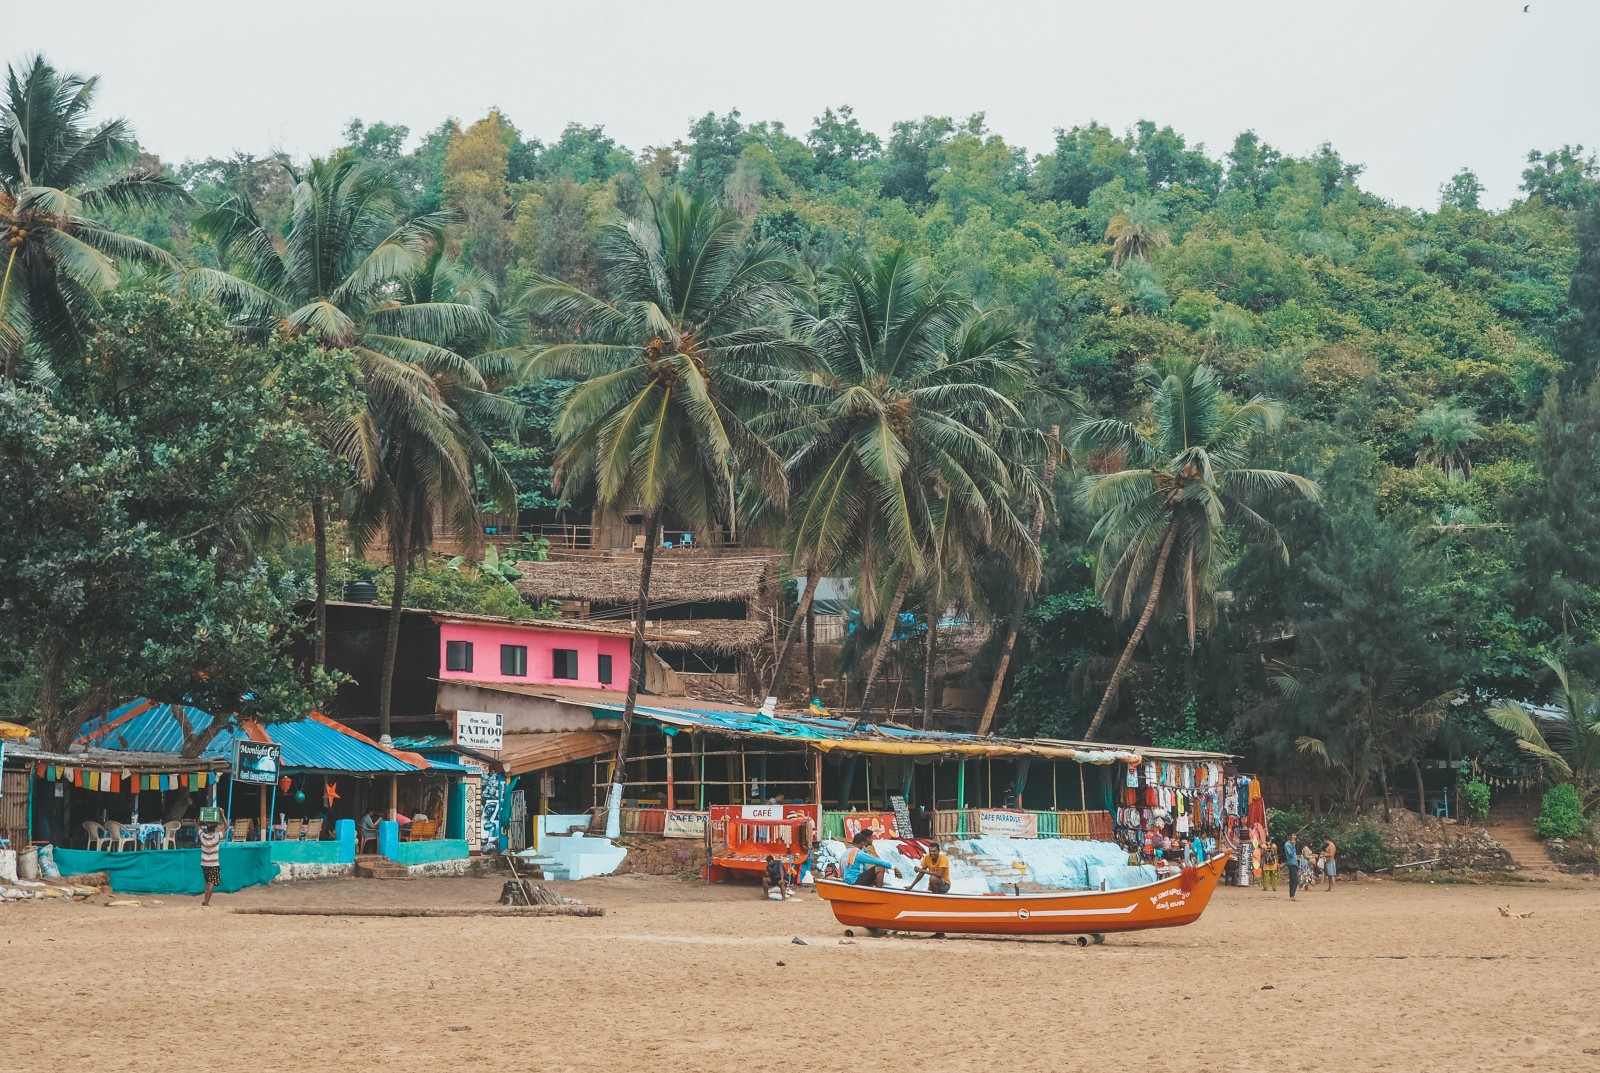 Kudle beach in Gokarna